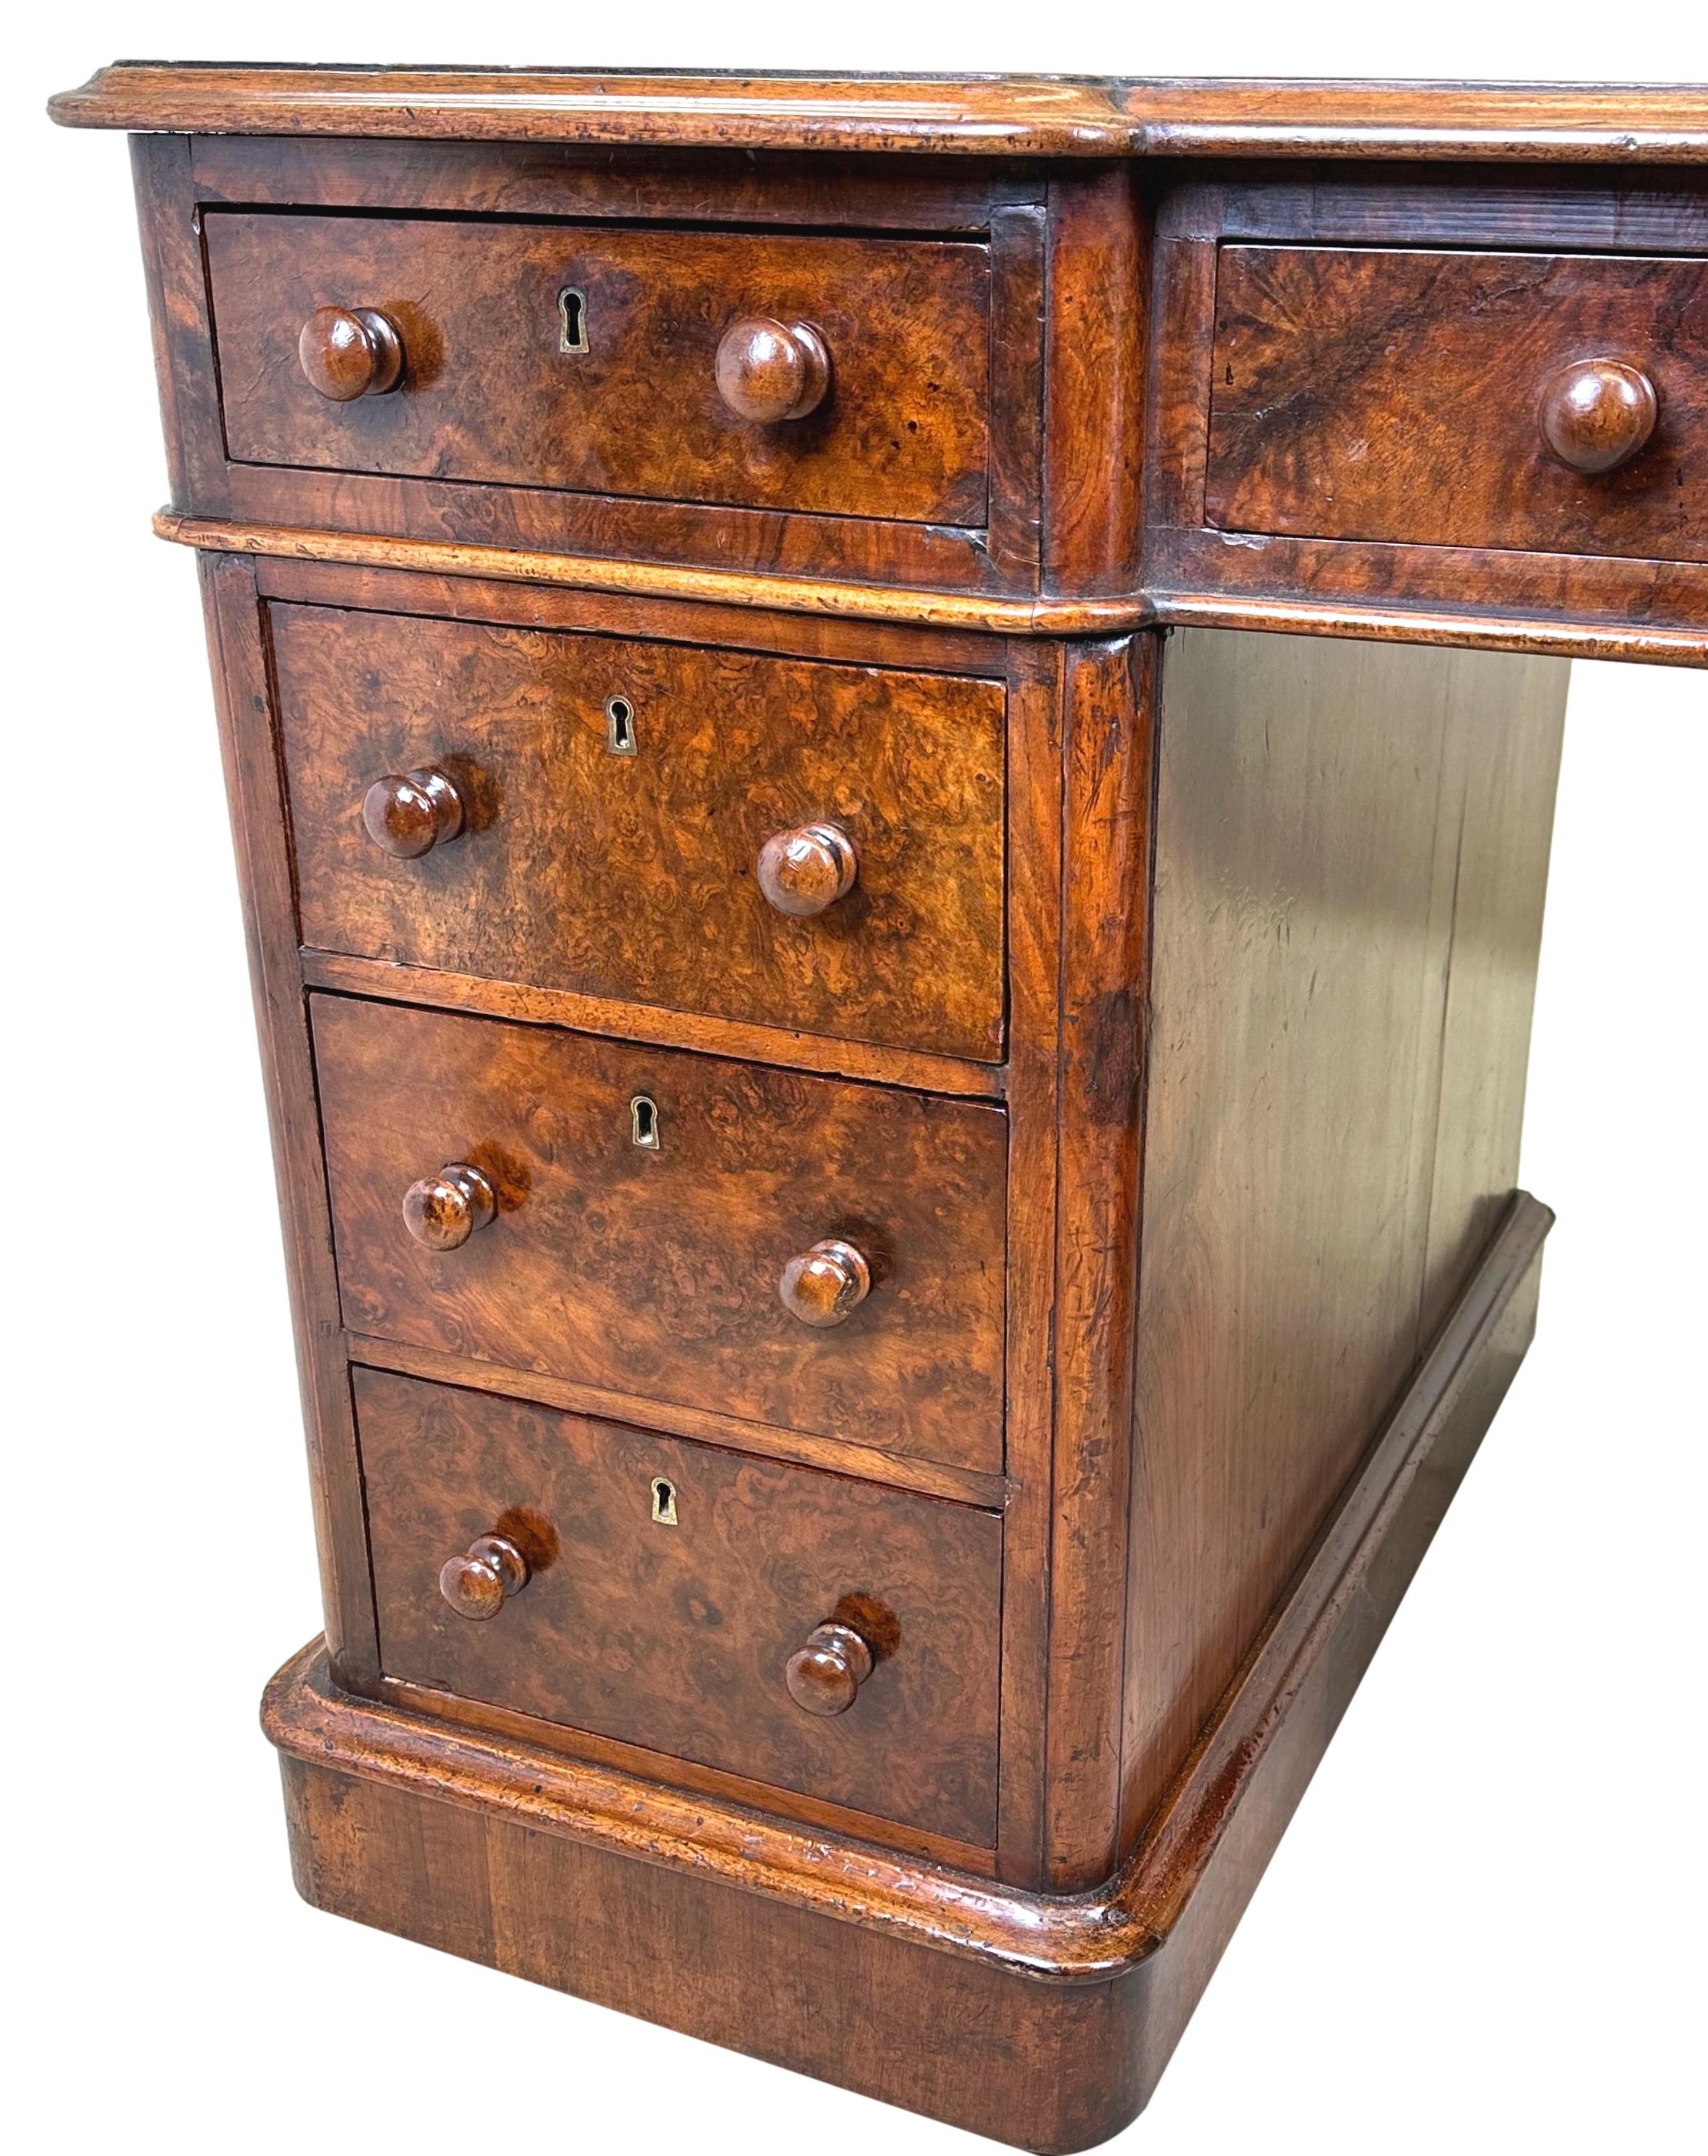 Eine feine Qualität Mitte des 19. Jahrhunderts Burr Walnut Pedestal Schreibtisch, von guten Proportionen, mit vergoldetem Leder Inset, um invertiert Breakfront oben, über neun Schubladen mit Original gedrechselten Holzknöpfen, auf Original Sockel